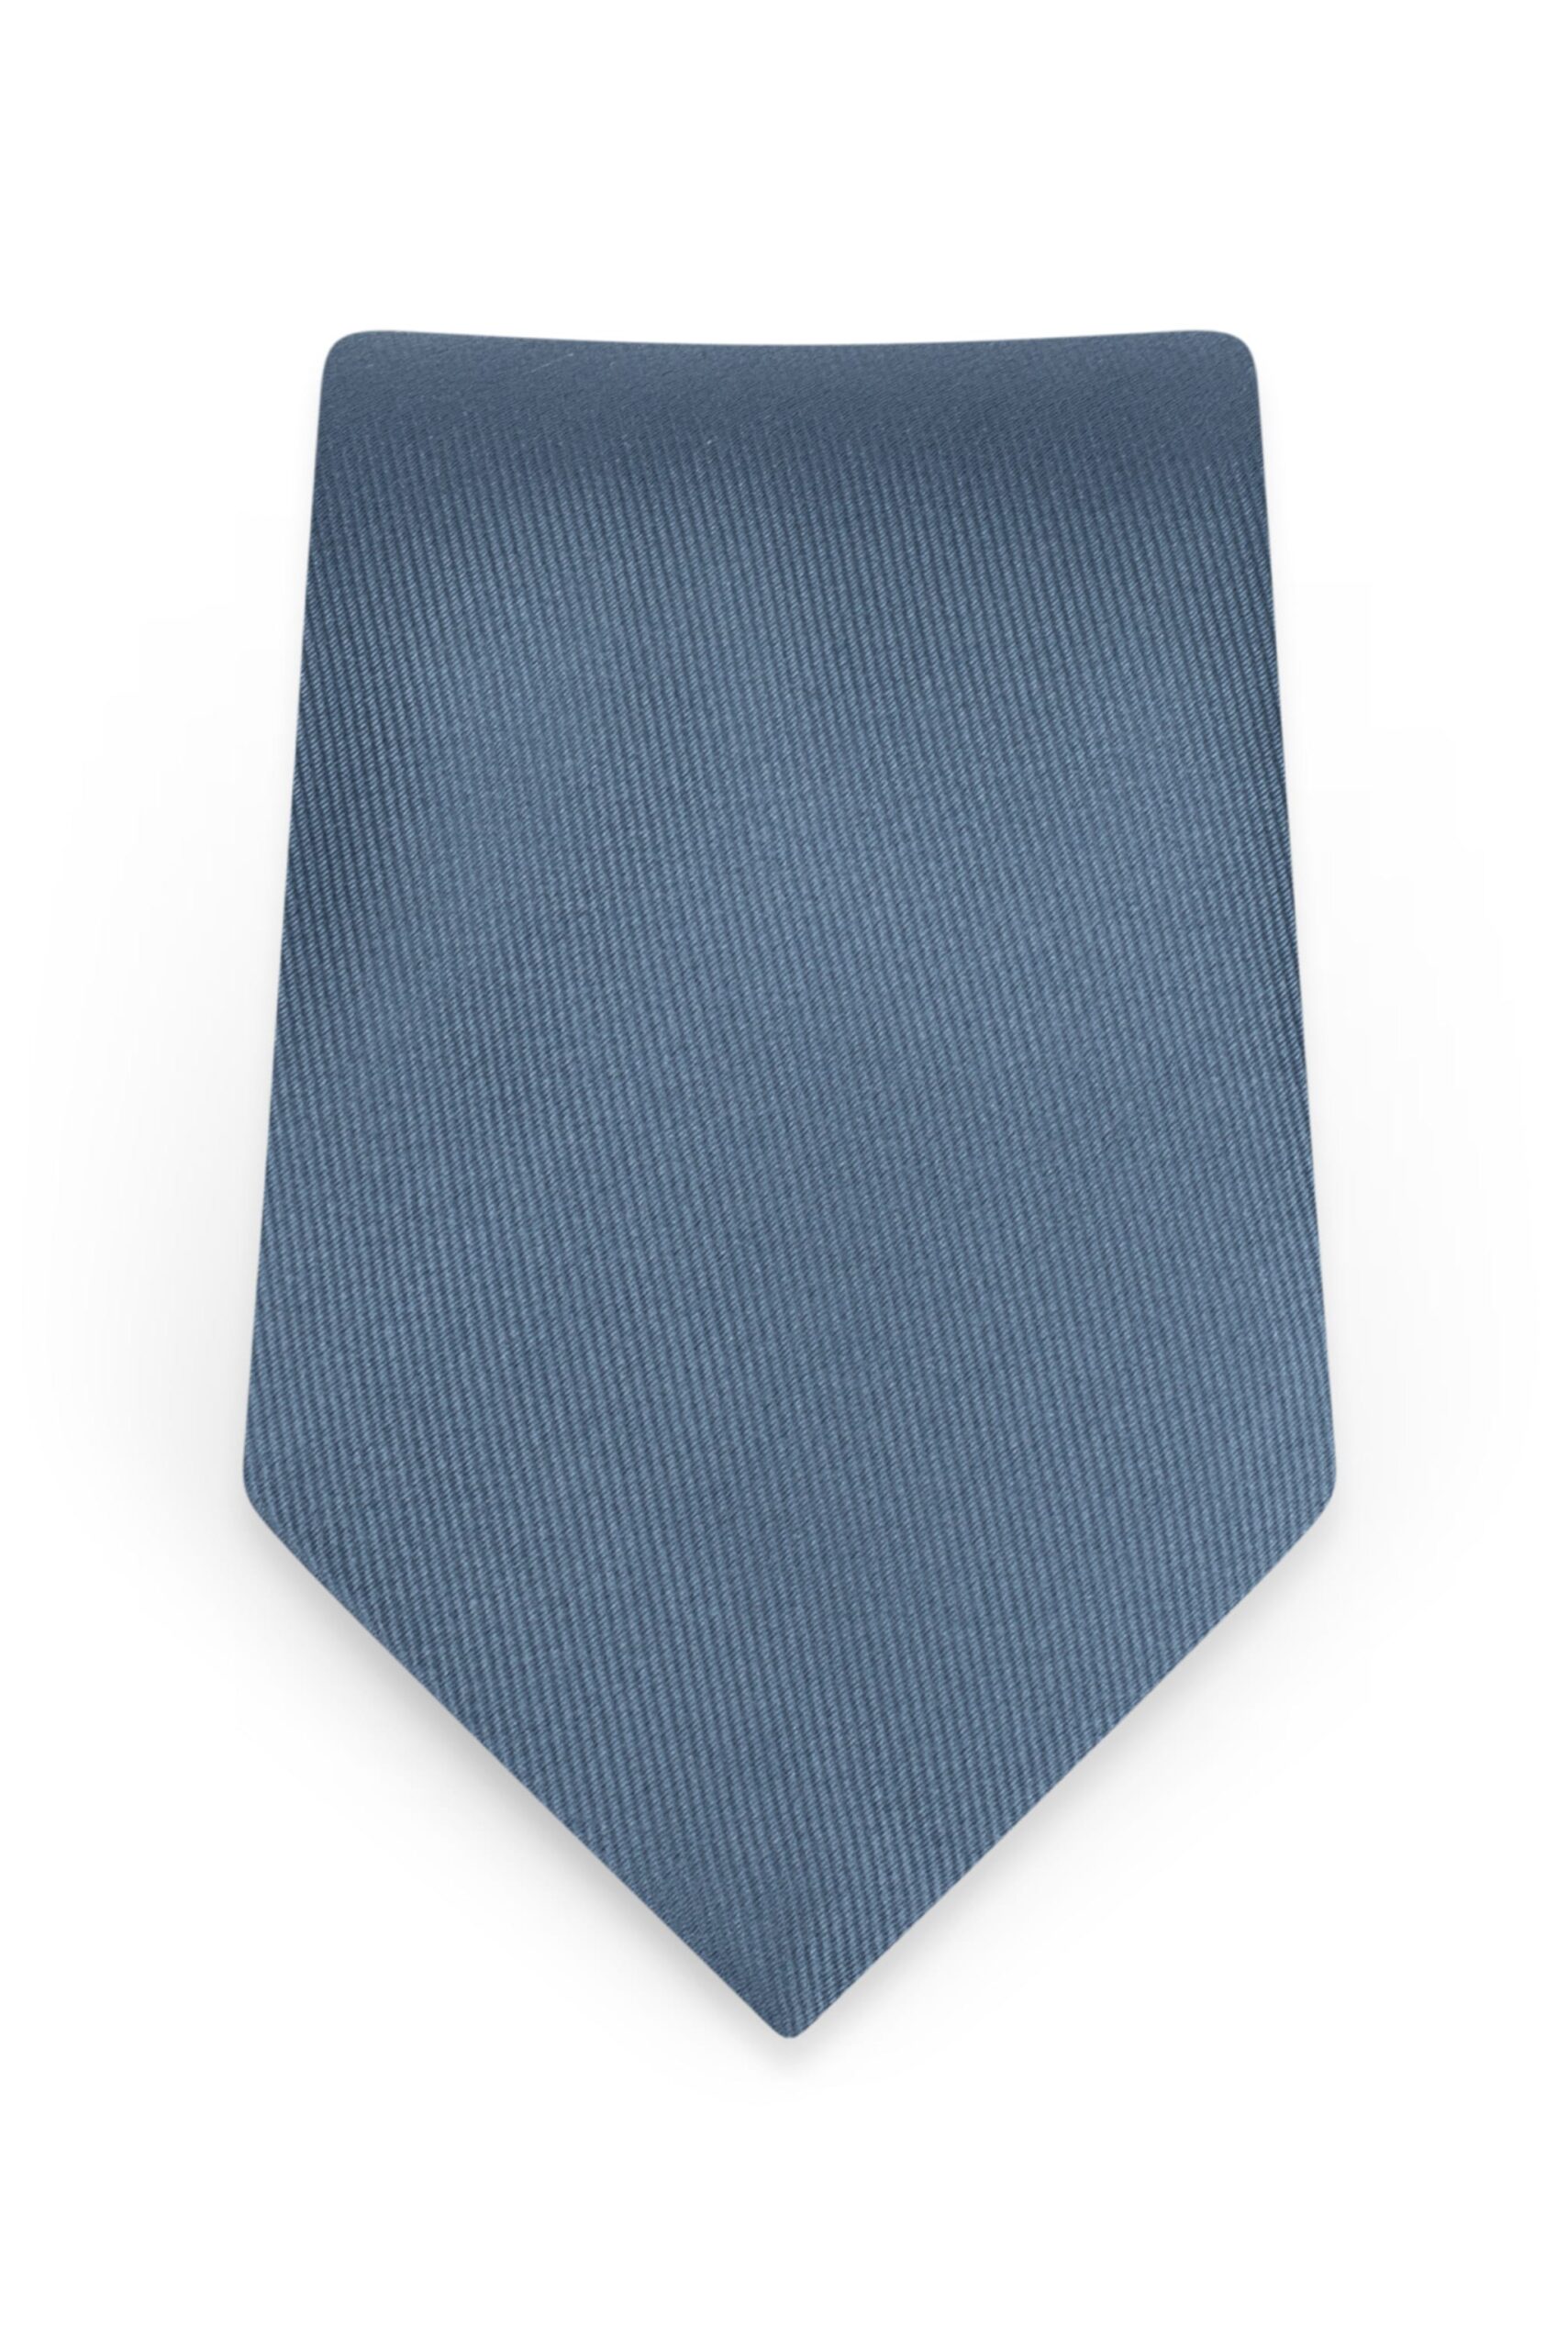 Solid Slate Blue Self-Tie Windsor Tie 1